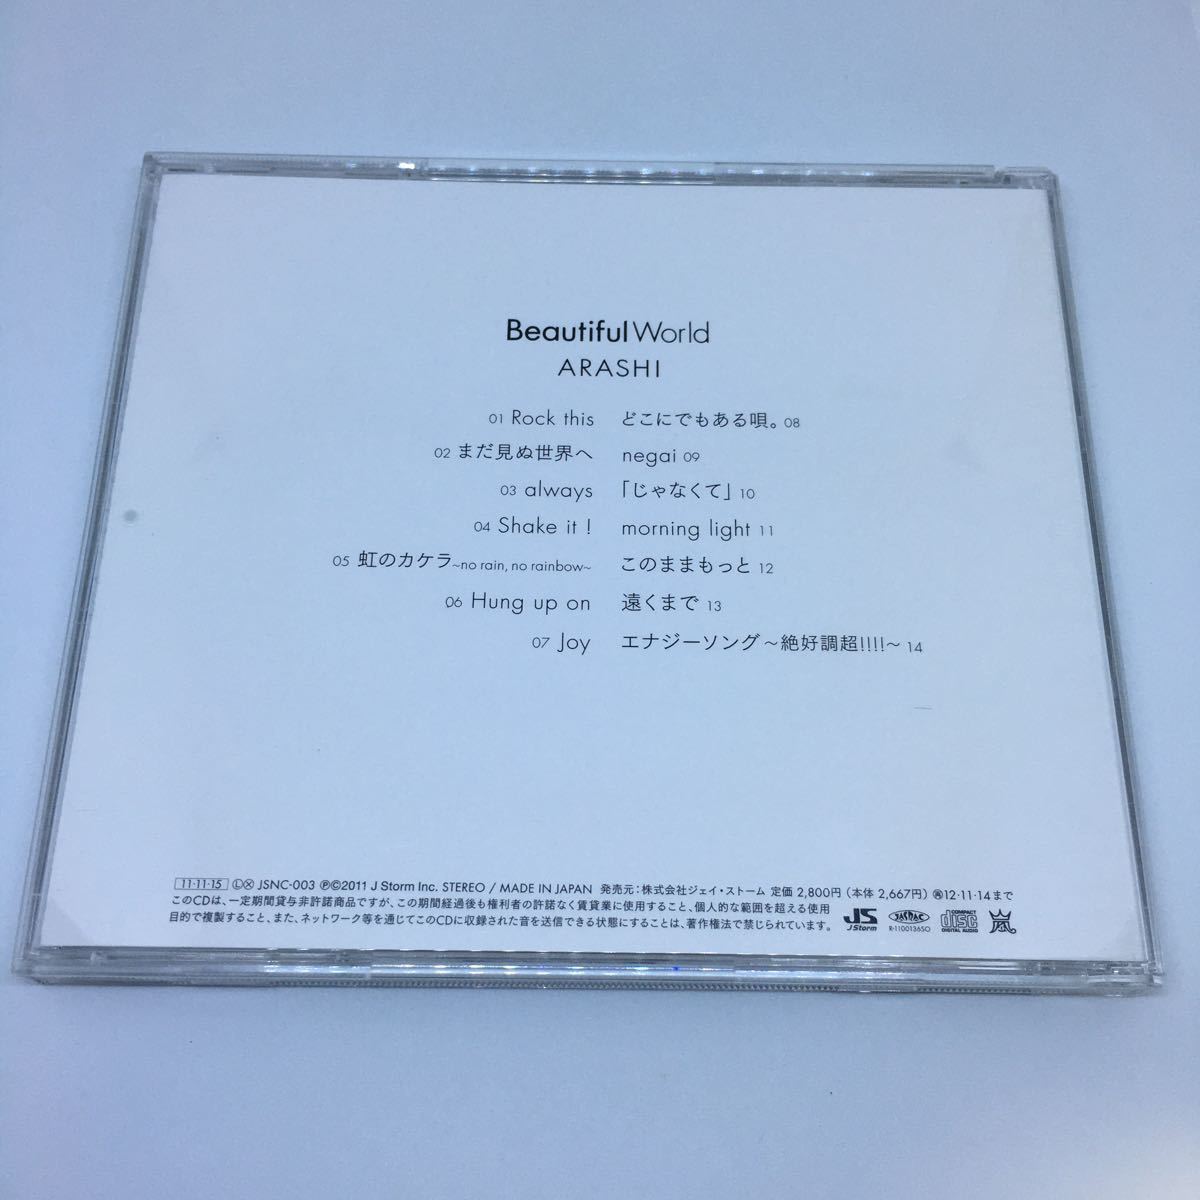 【送料120円~】エナジーソング収録 嵐 Beautiful World セブンネット限定盤 CD * アルバム ARASHI 邦楽 J-POP_画像4